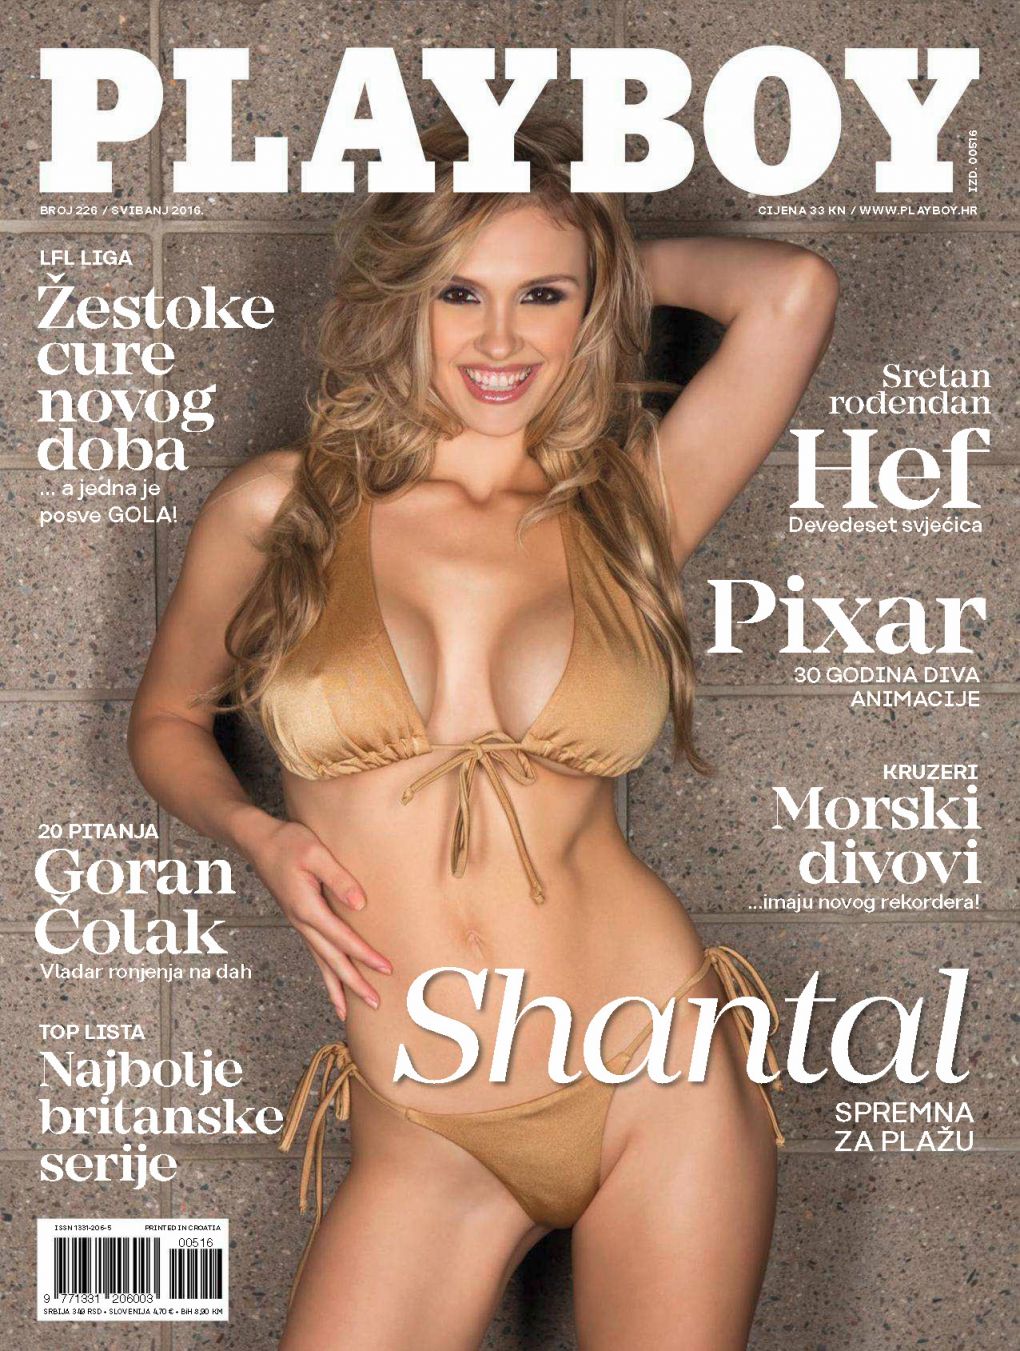 Naked Photoshoot of Shantal Monique